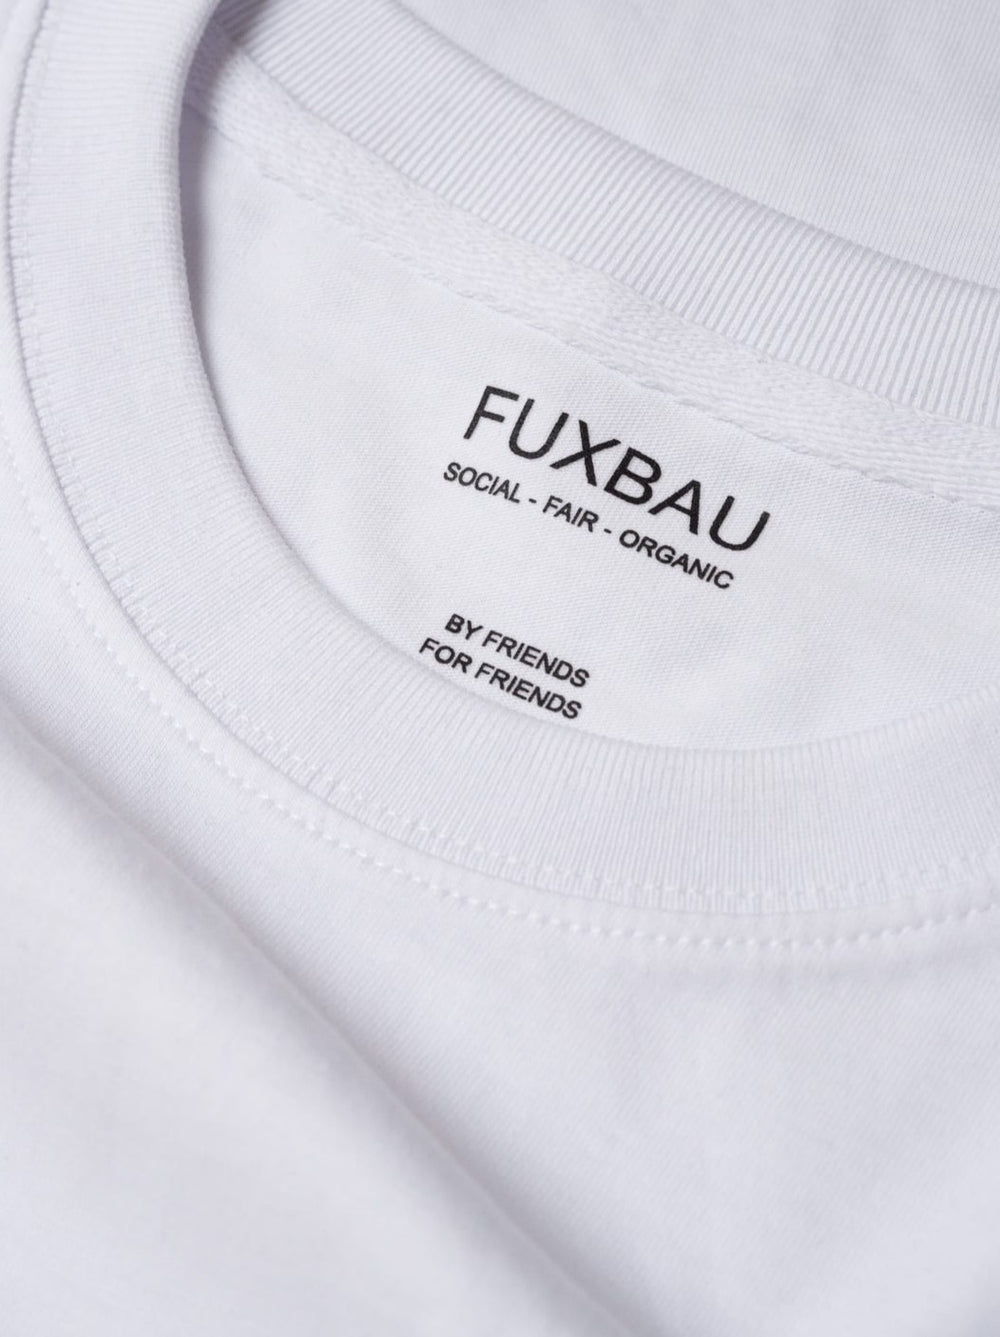 Imprint im weißem Basic T-shirt FUXBAU social - fair - organic